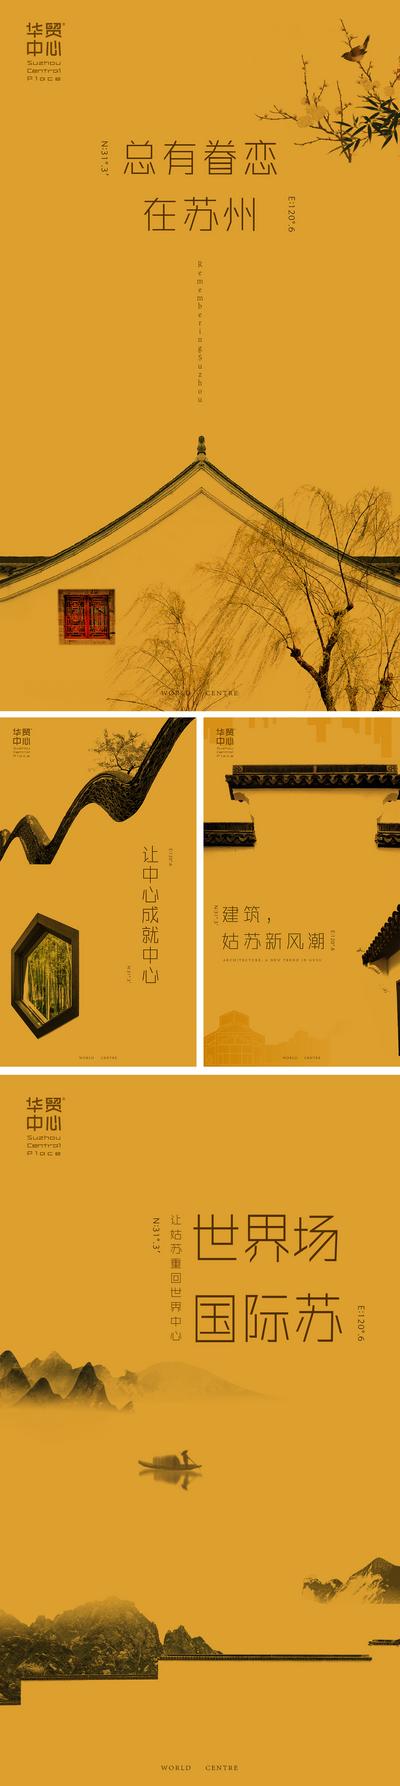 南门网 海报 房地产 江南 苏州 中国风 古风 水墨风 大气 创意 简约 中式建筑 徽派建筑